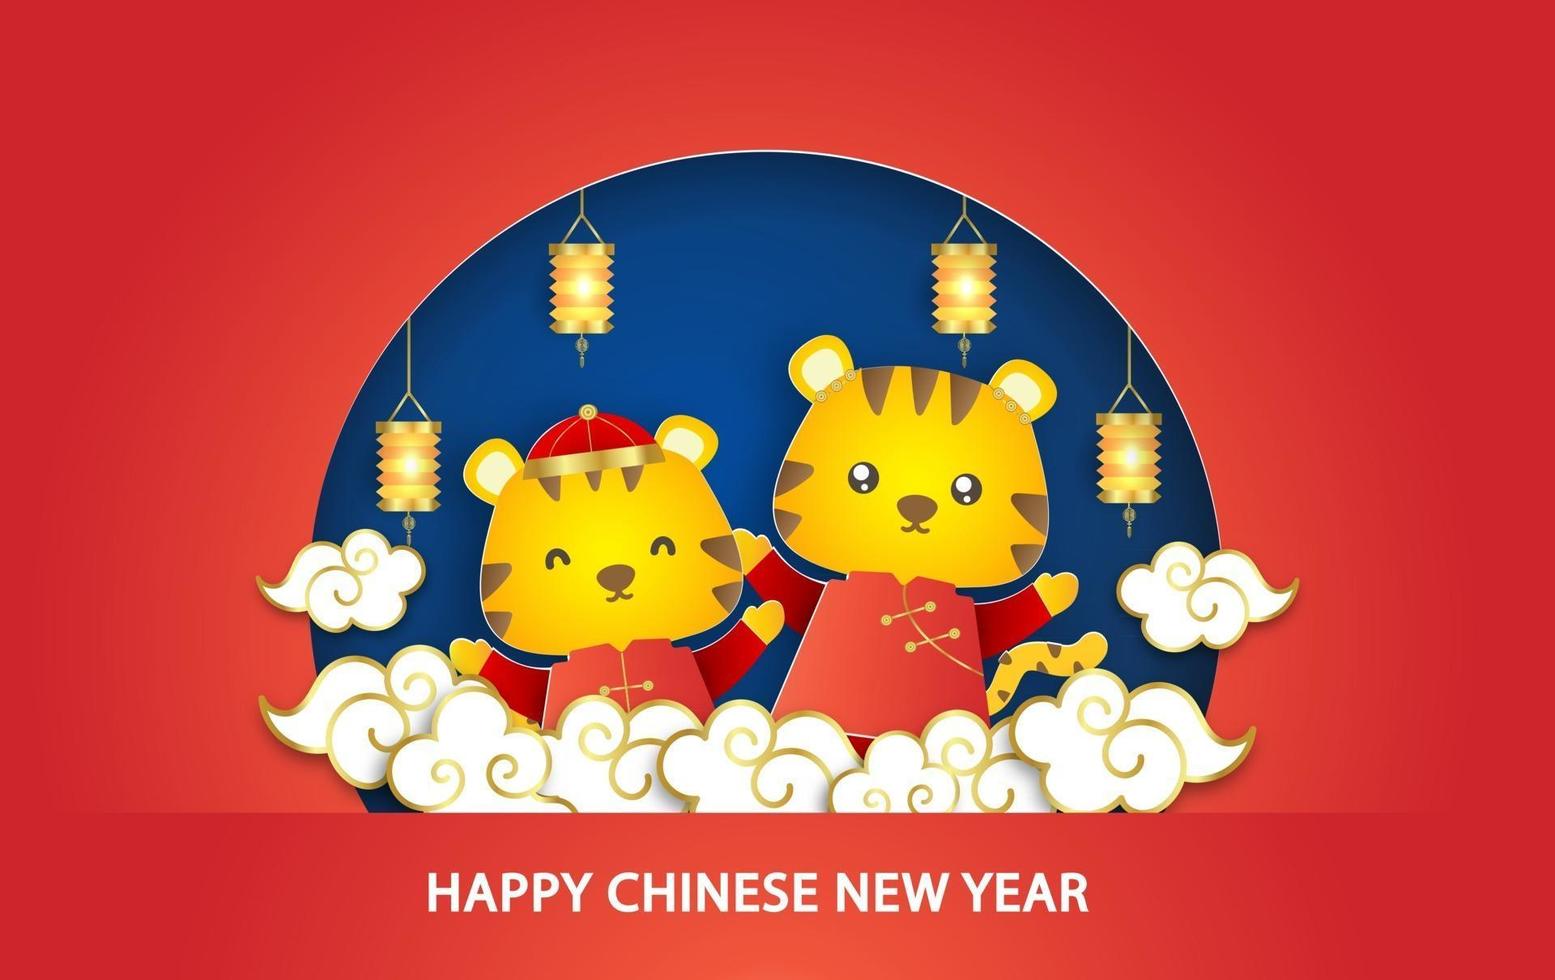 año nuevo chino 2022 tarjeta del año del tigre en estilo de corte de papel vector